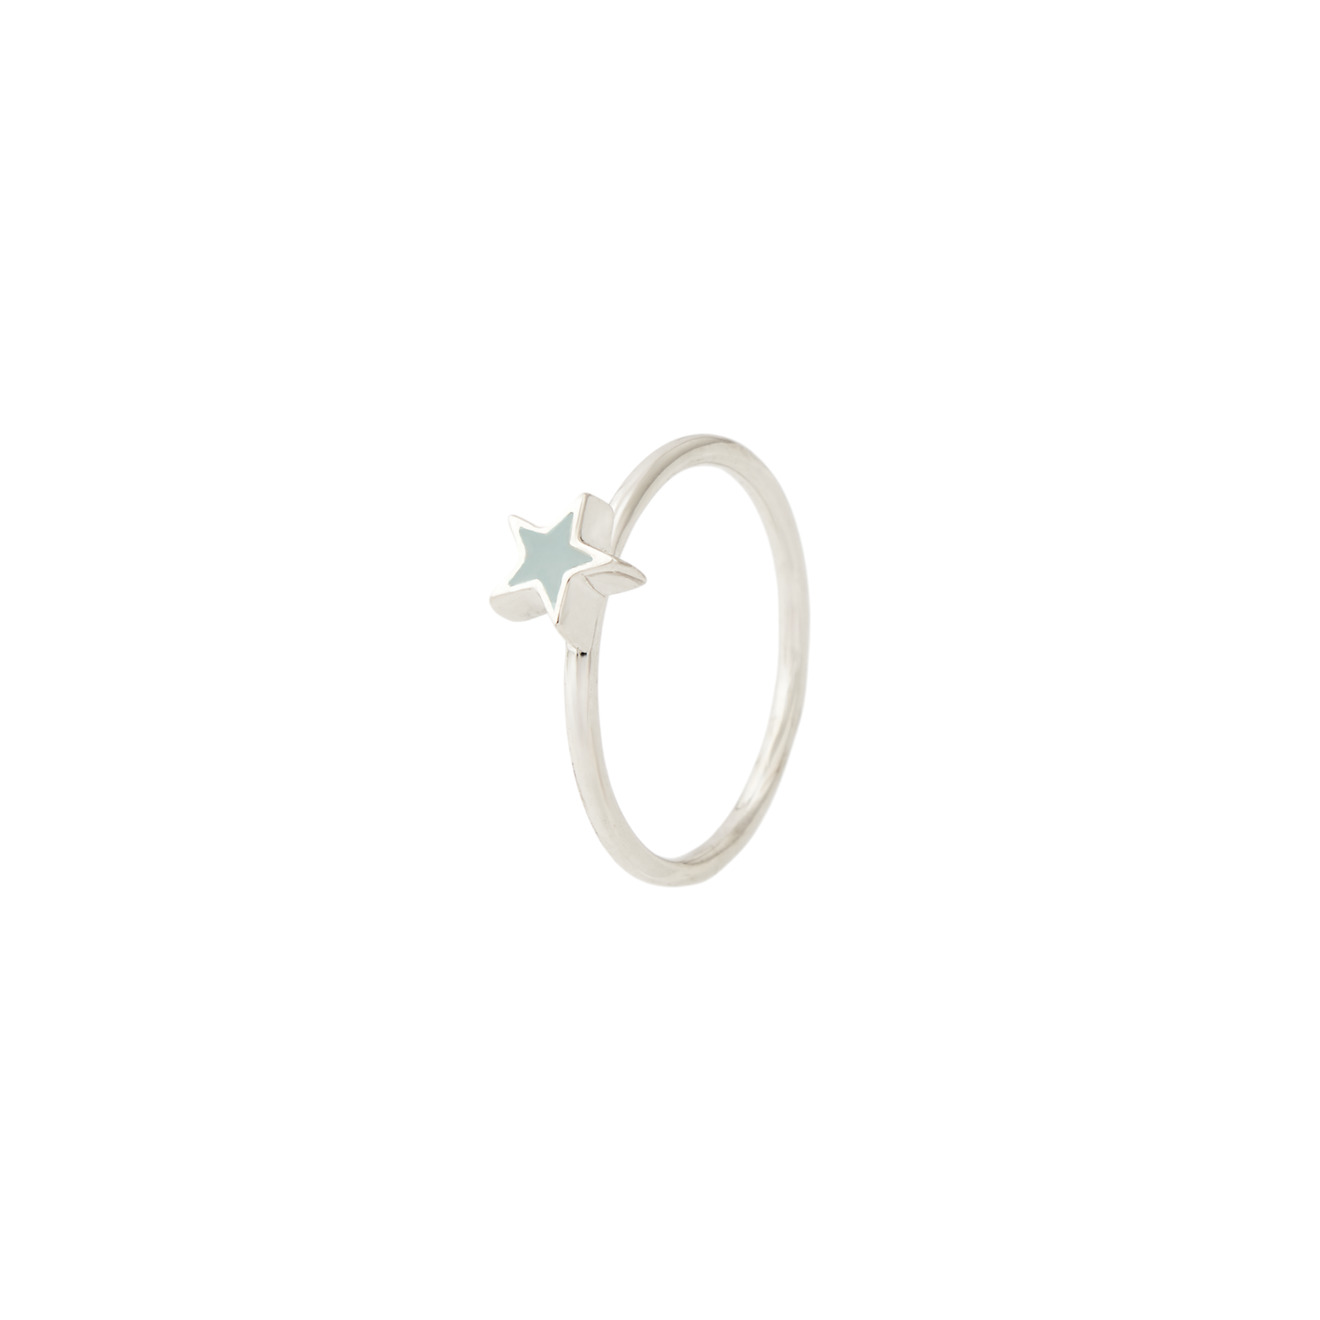 УРА jewelry Кольцо-звезда из серебра с голубой эмалью